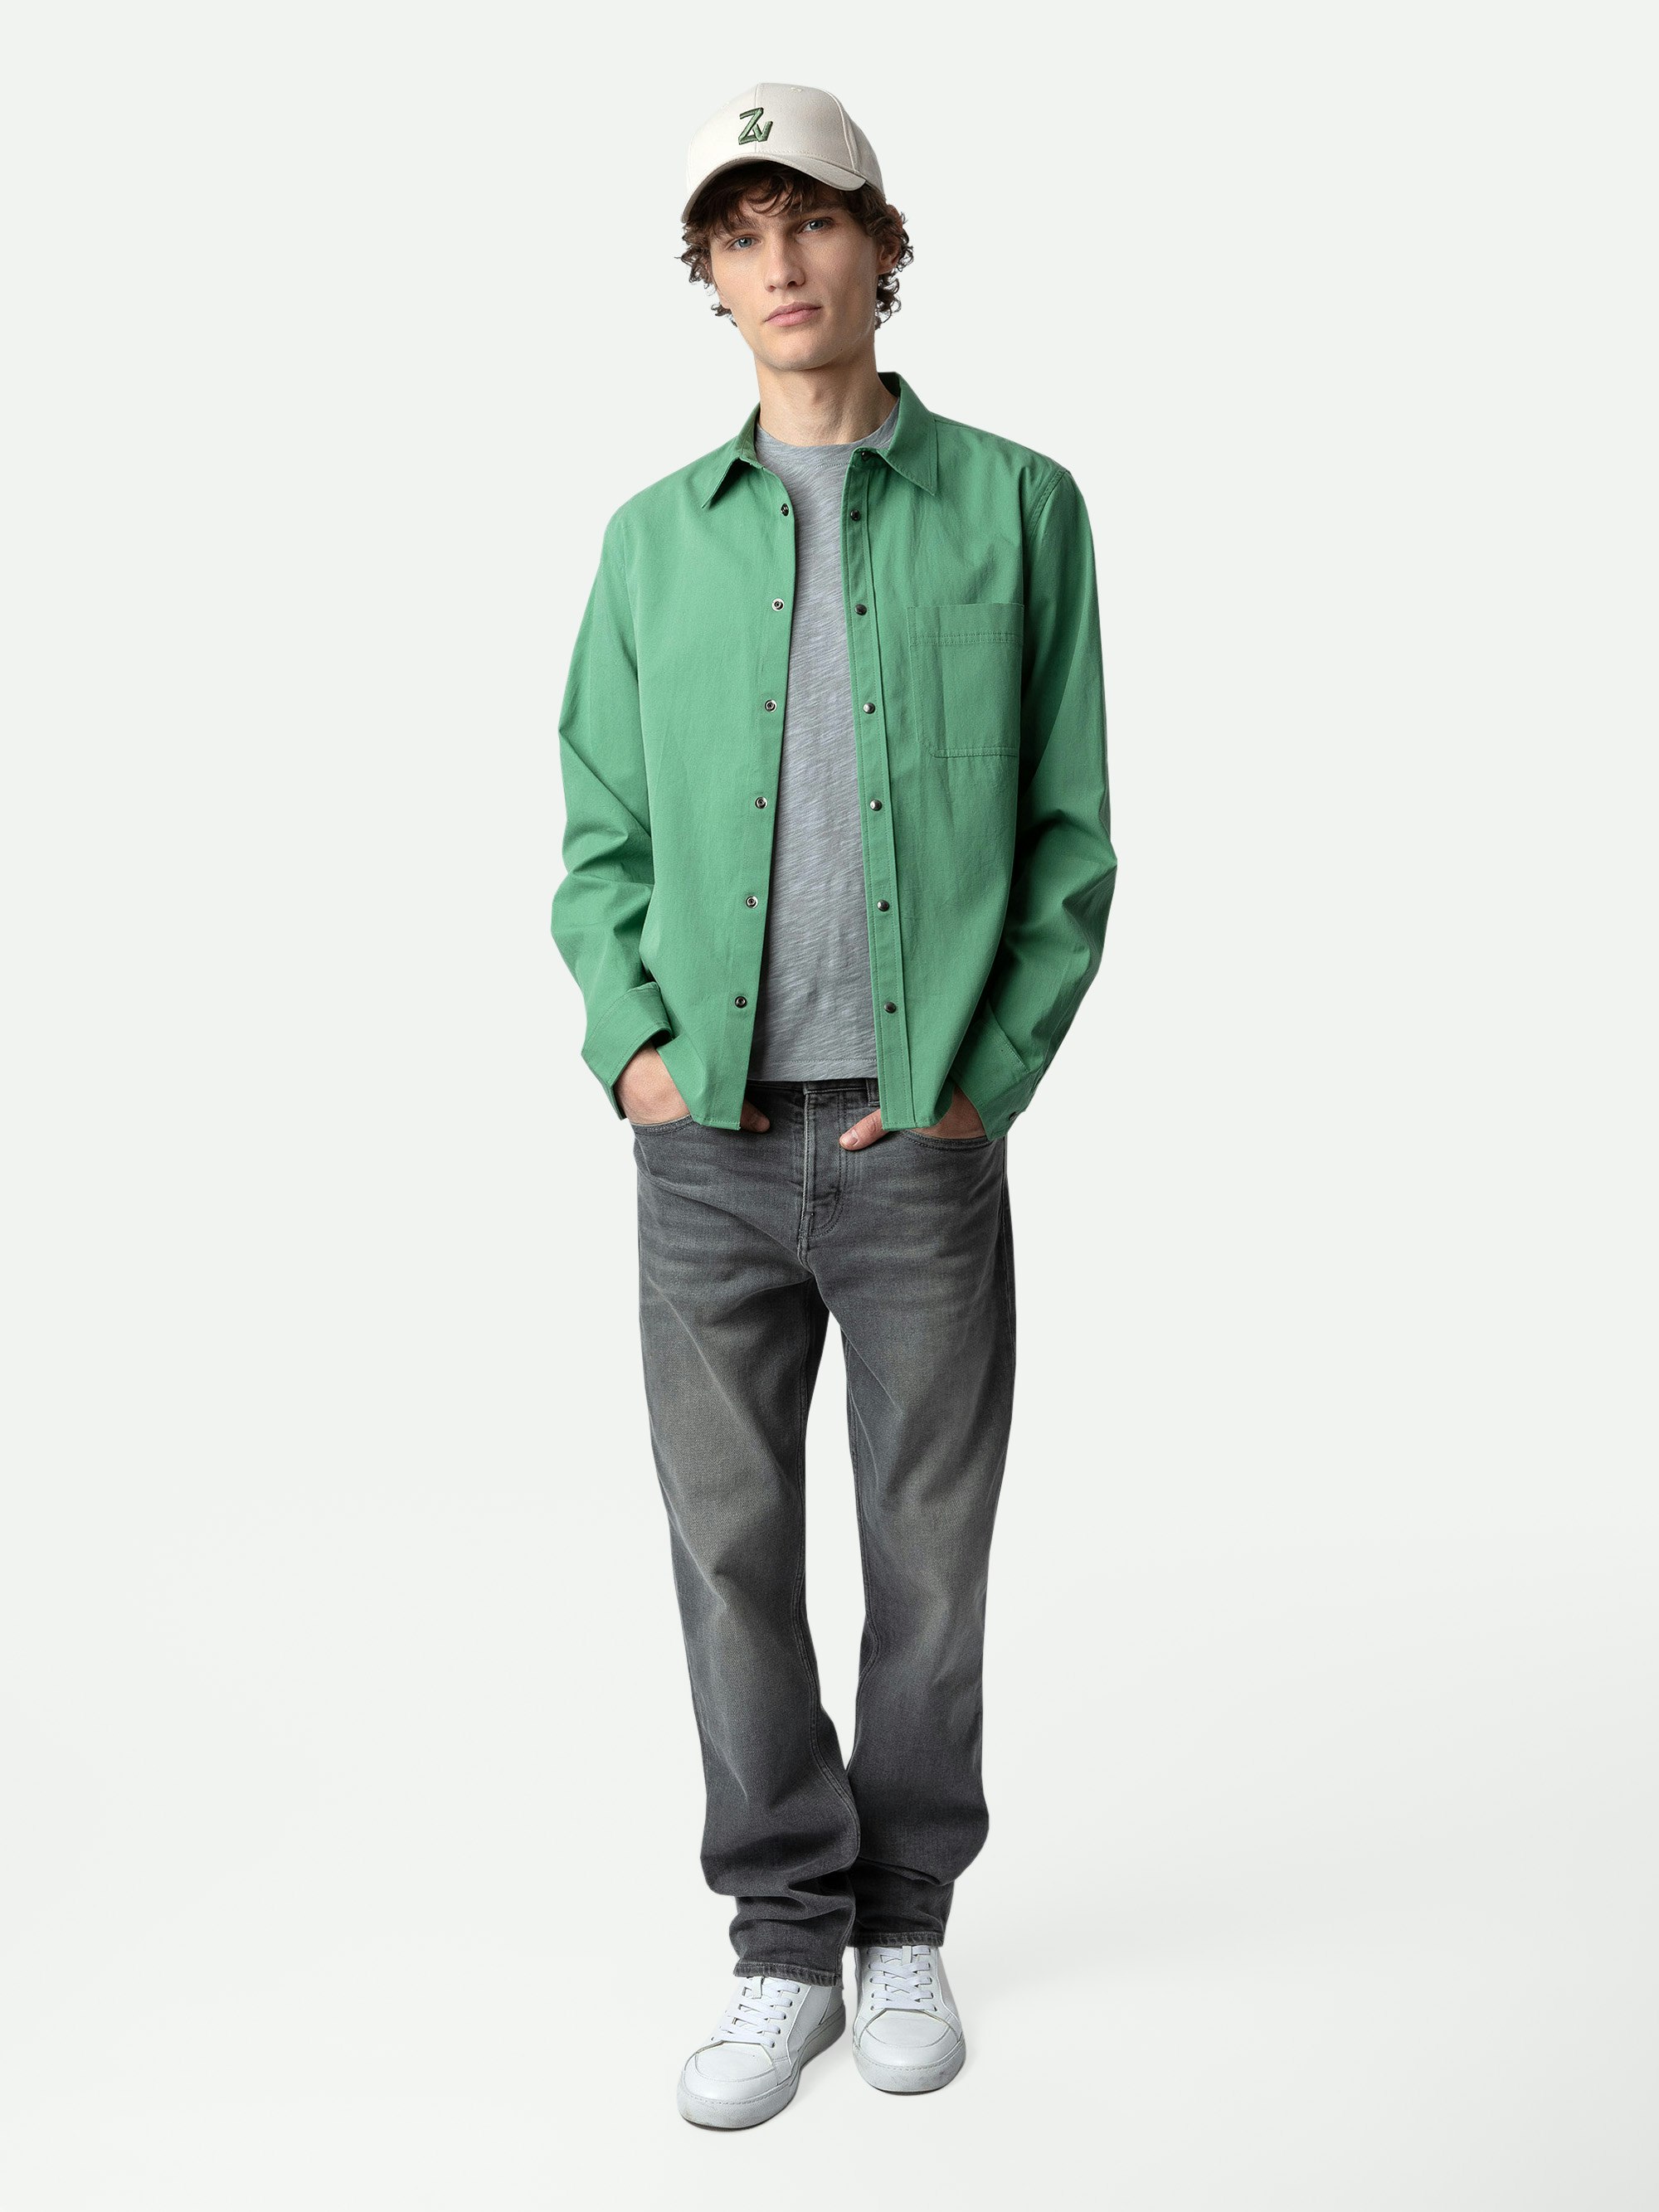 Chemise Stan - Chemise en twill de coton verte, poche plaquée et customisations au dos créées par Humberto Cruz.